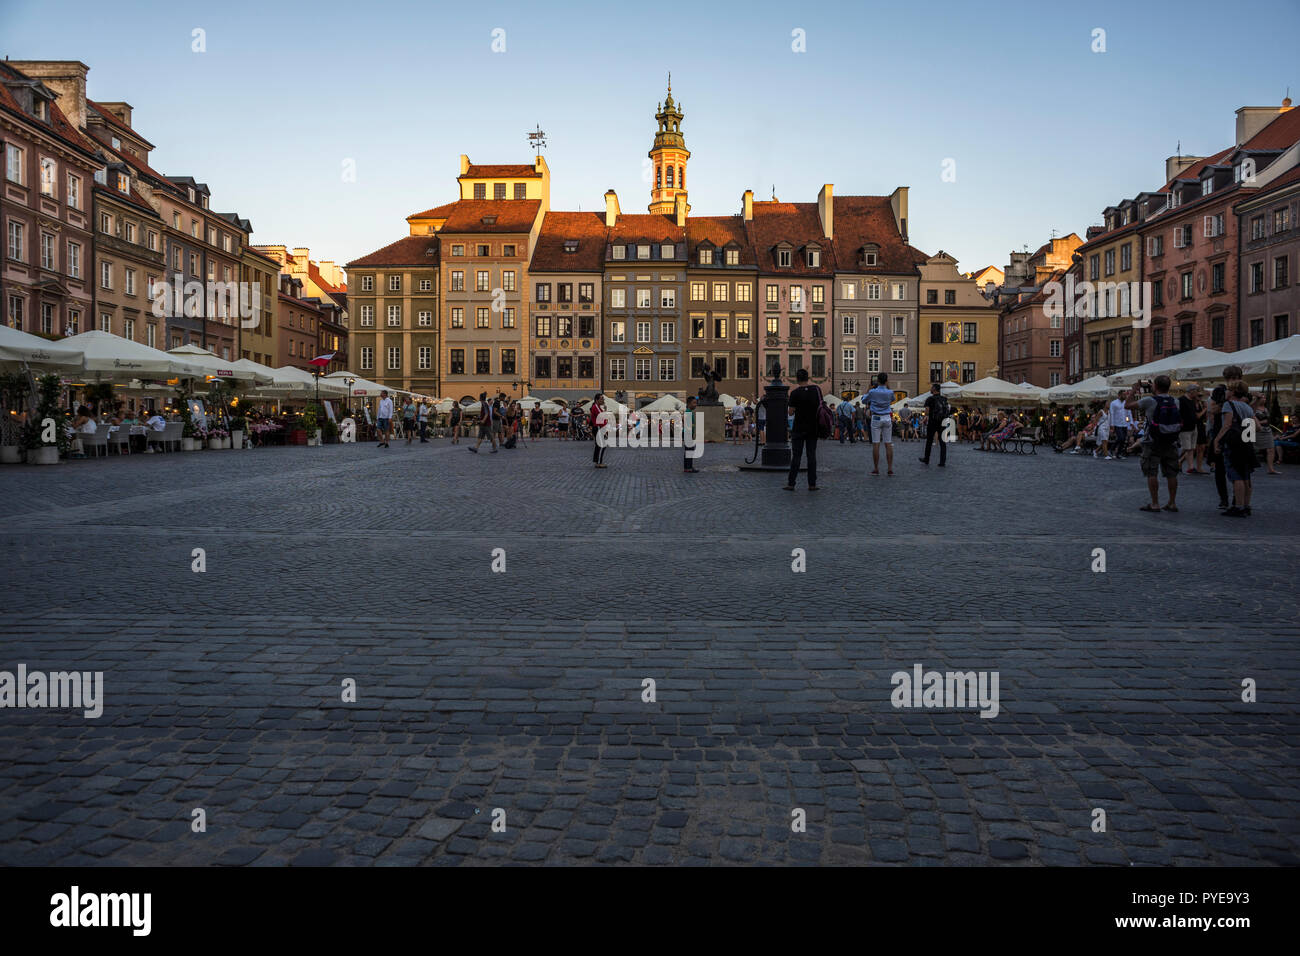 Altstadt Marktplatz in Warschau, Polen 2018. Stockfoto